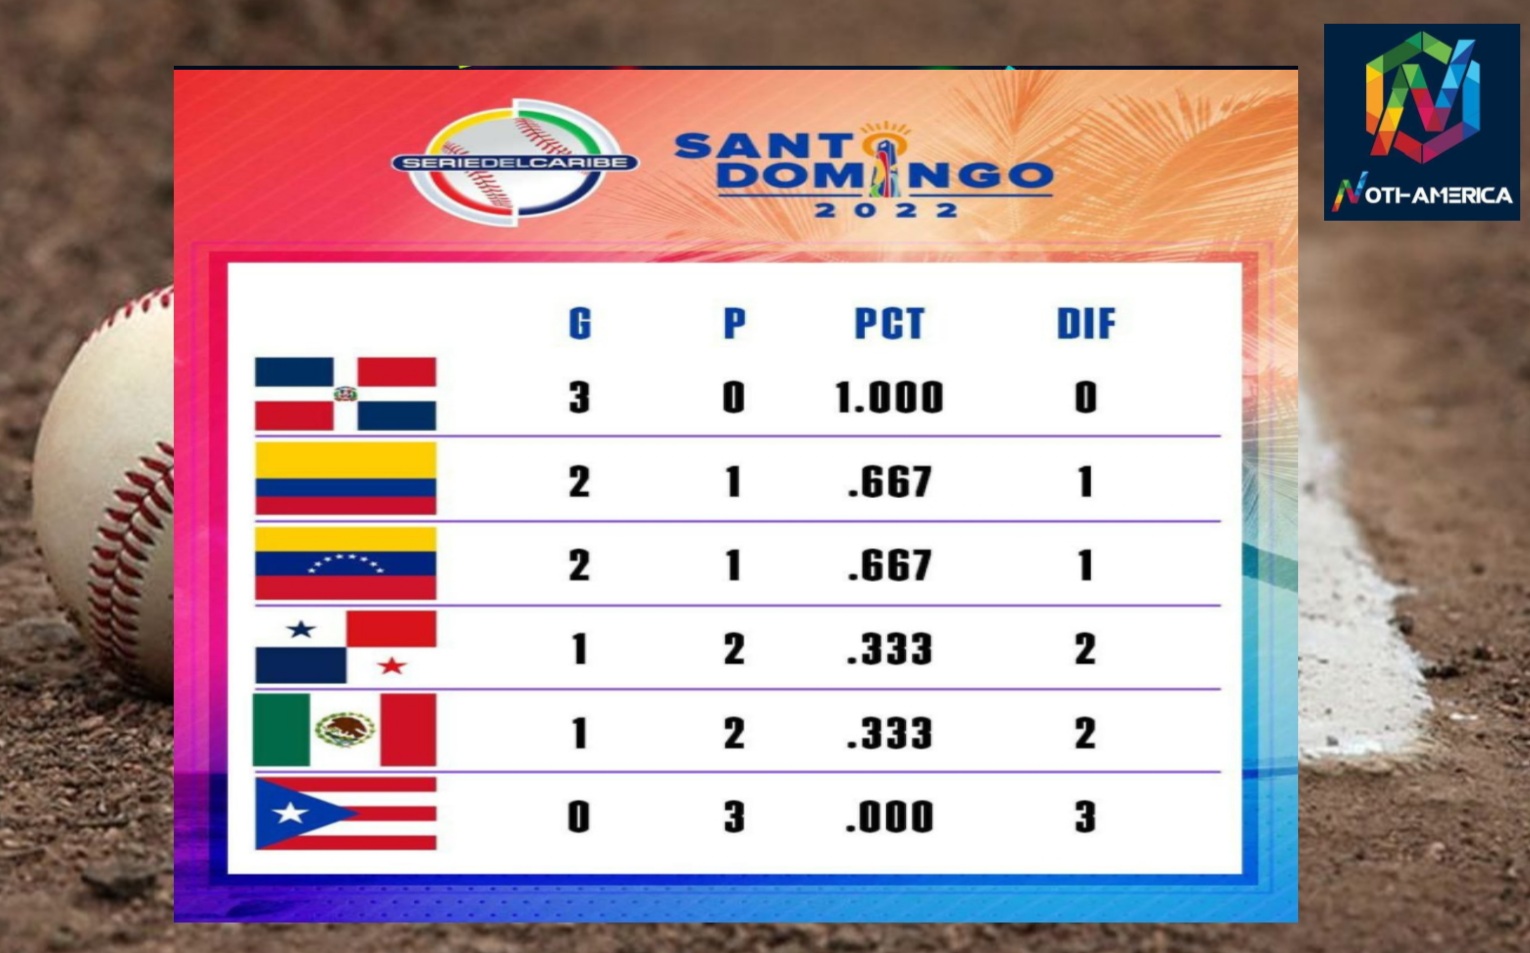 República Dominicana liderá la tabla de la Serie del Caribe 2022